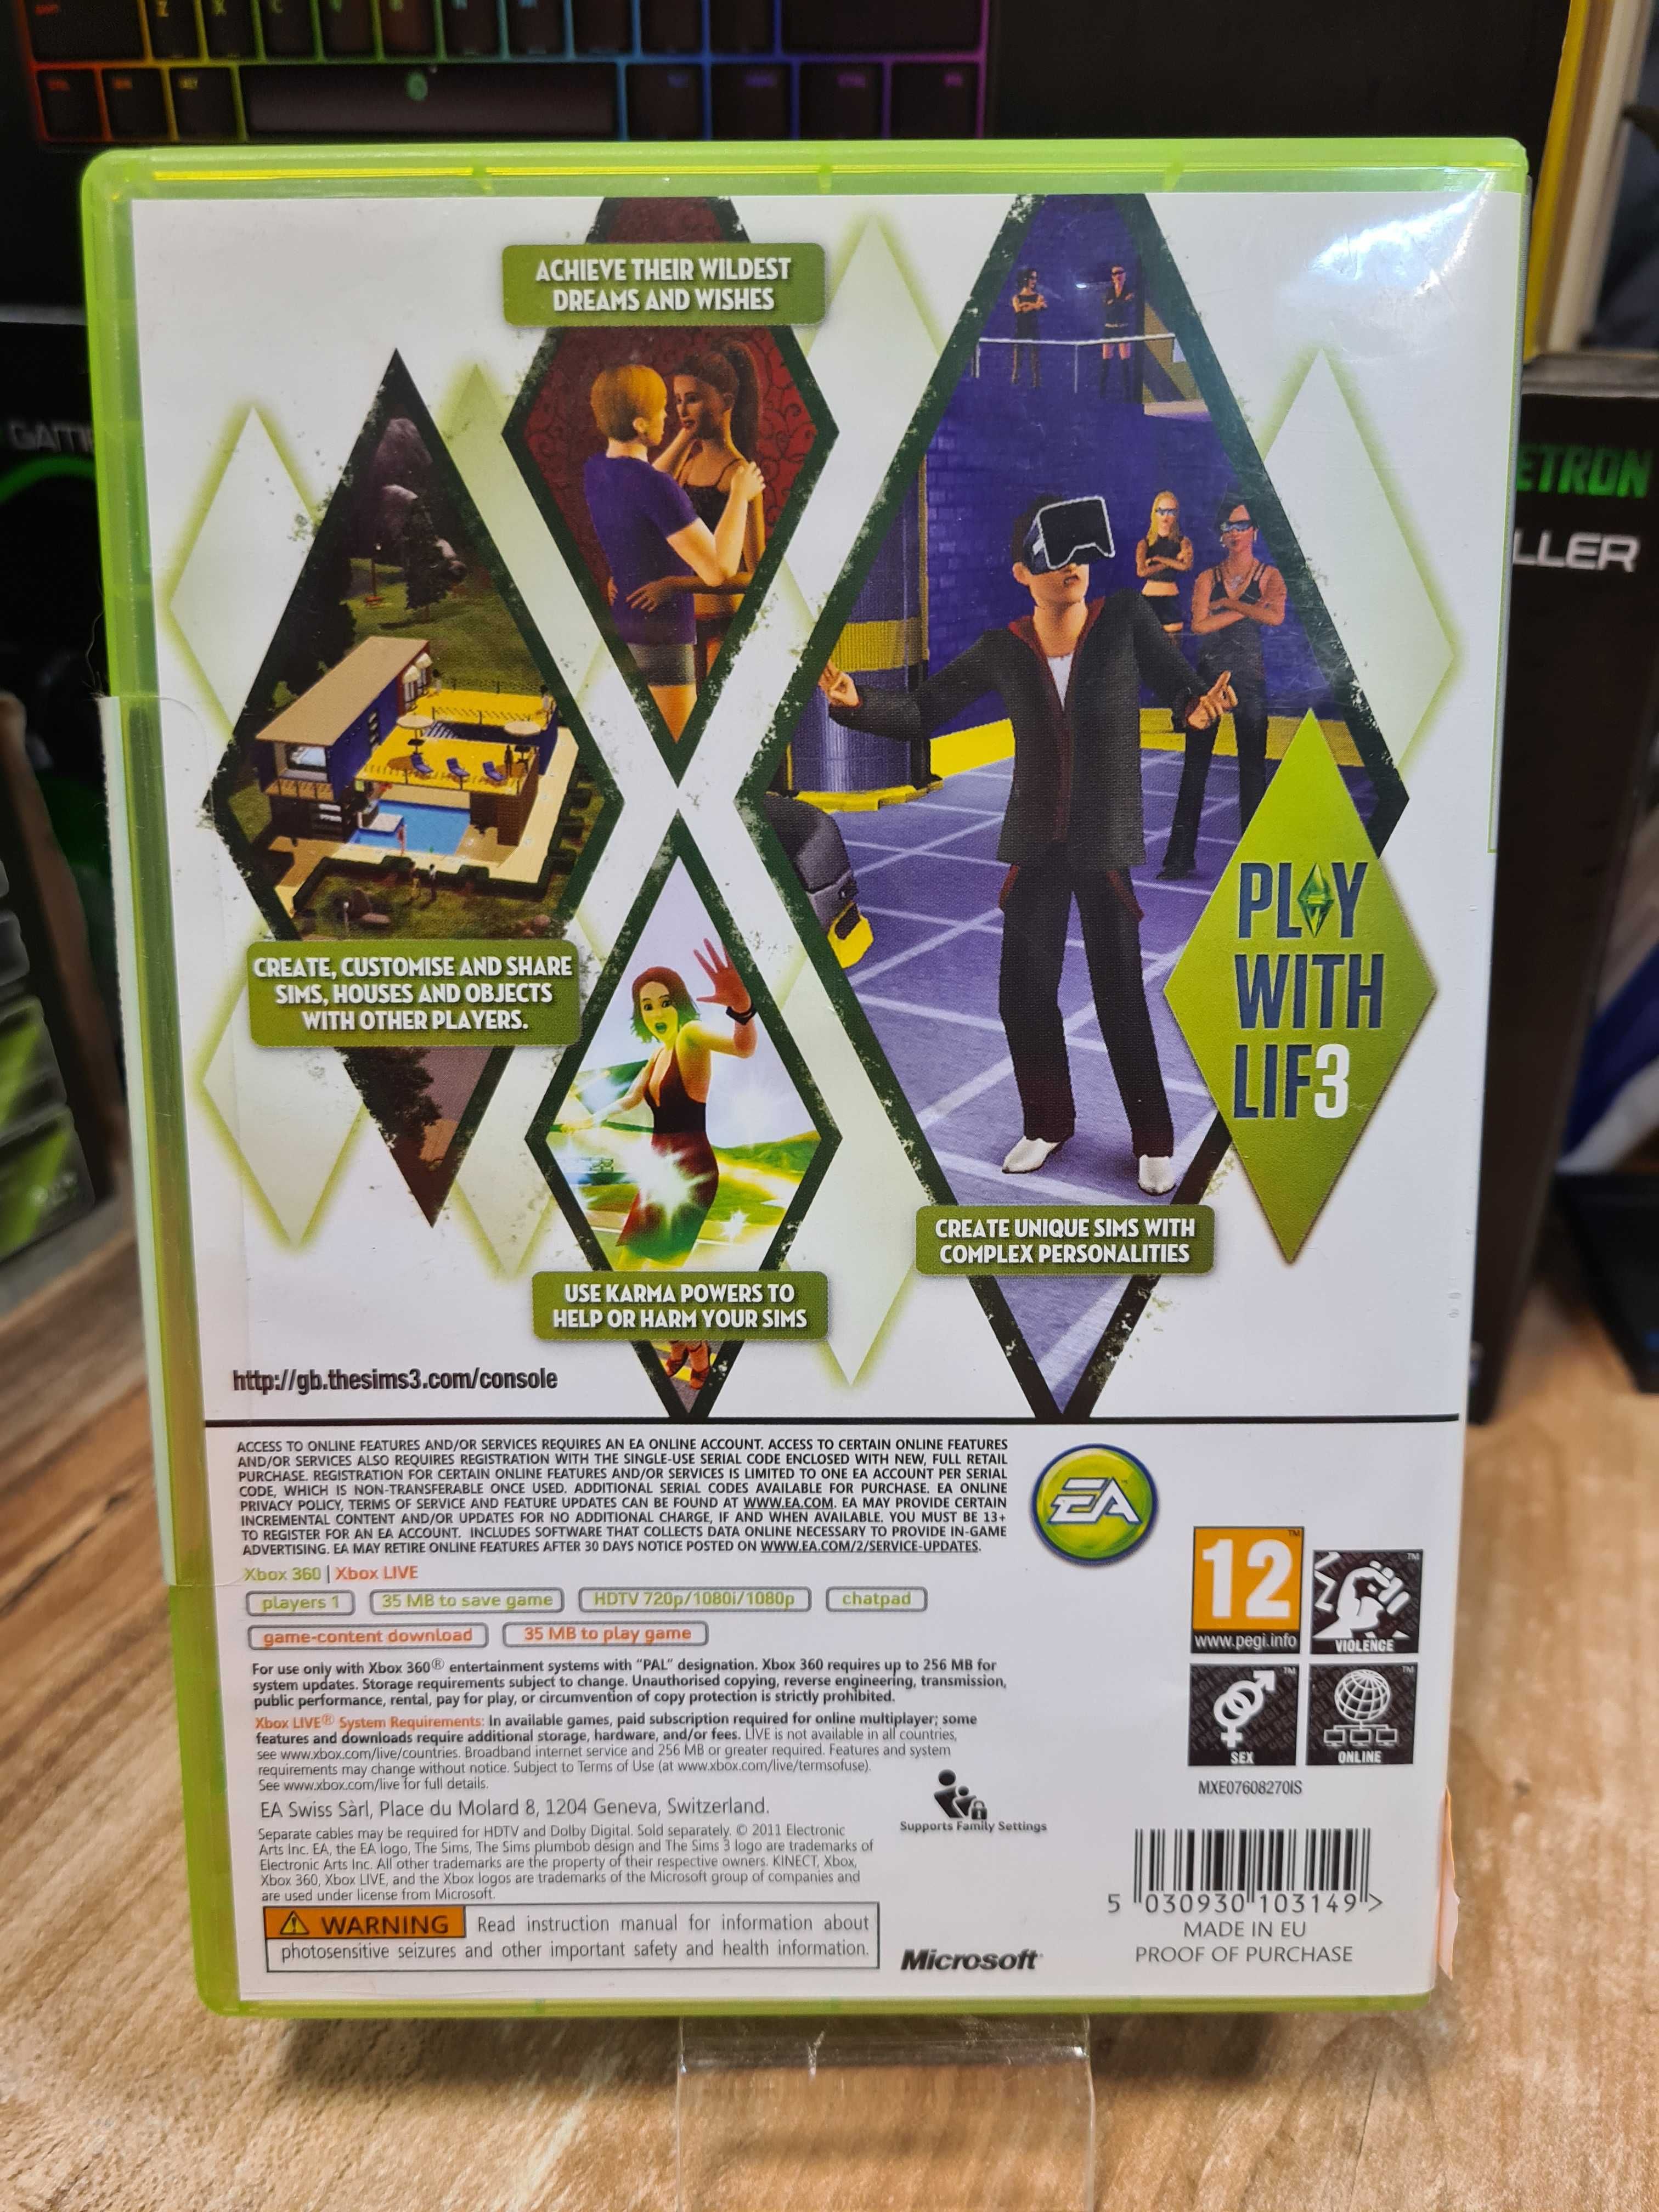 The Sims 3 XBOX 360, Sklep Wysyłka Wymiana